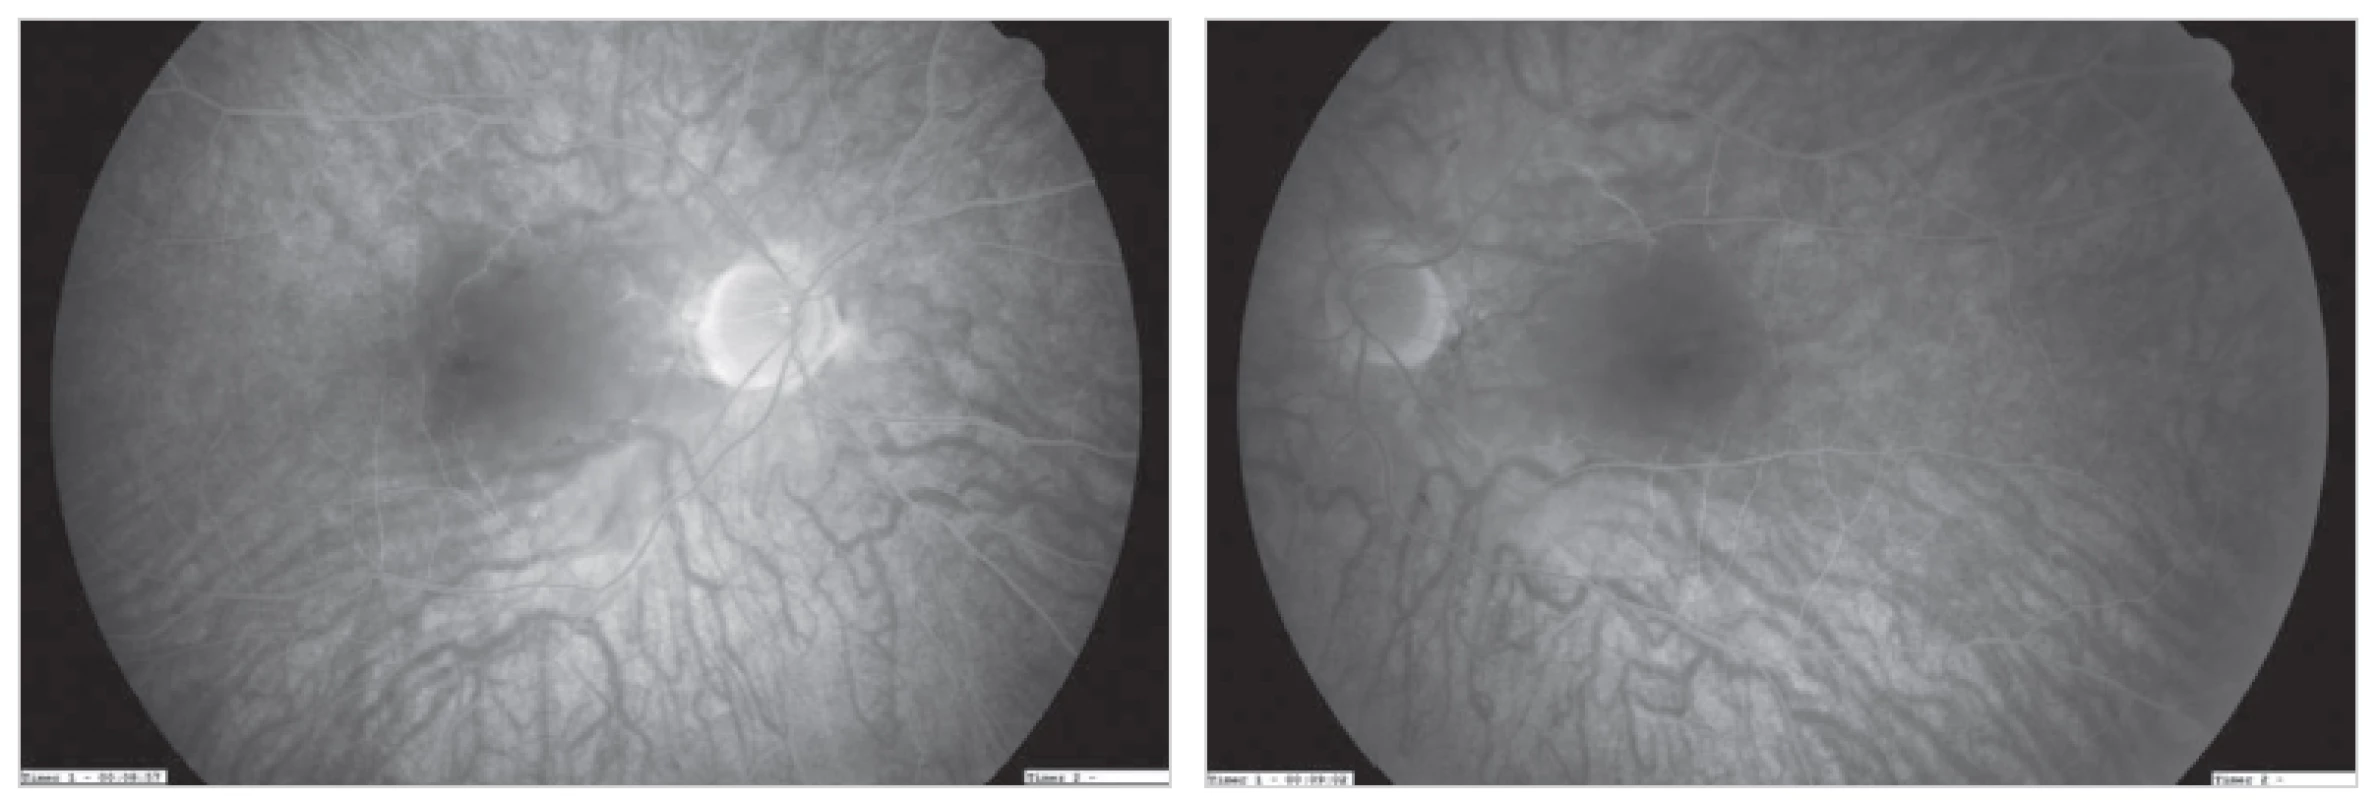 Fluorescenčná angiografia – oklúzia arteria centralis retinae bilateralis, cieva je bez perfúzie aj po 10 minúte
Fig. 2: Fluorescence angiography – bilateral central retinal artery occlusion; perfusion loss of the vessels even after 10 minutes